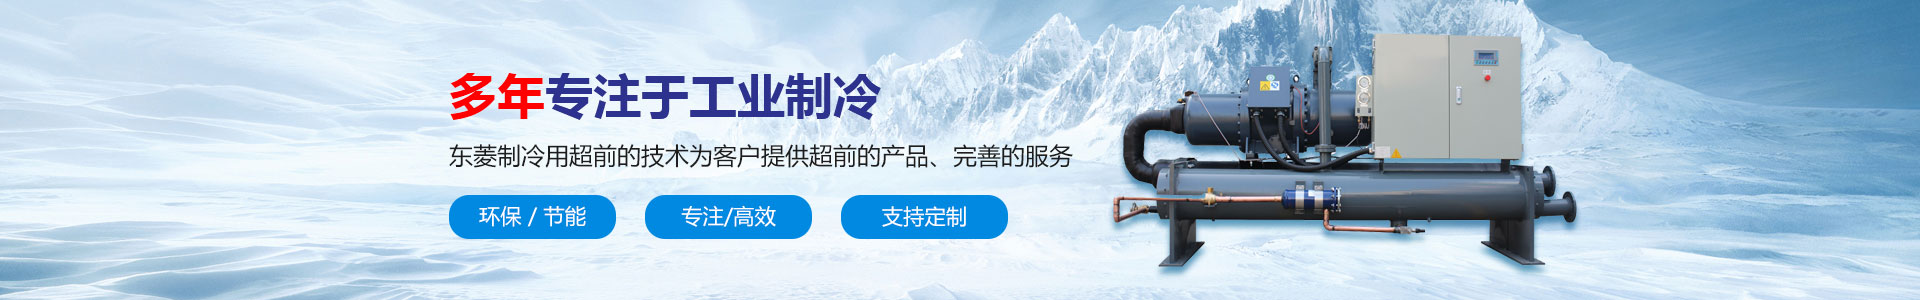 深圳市东菱制冷设备有限公司_螺杆式冷水机